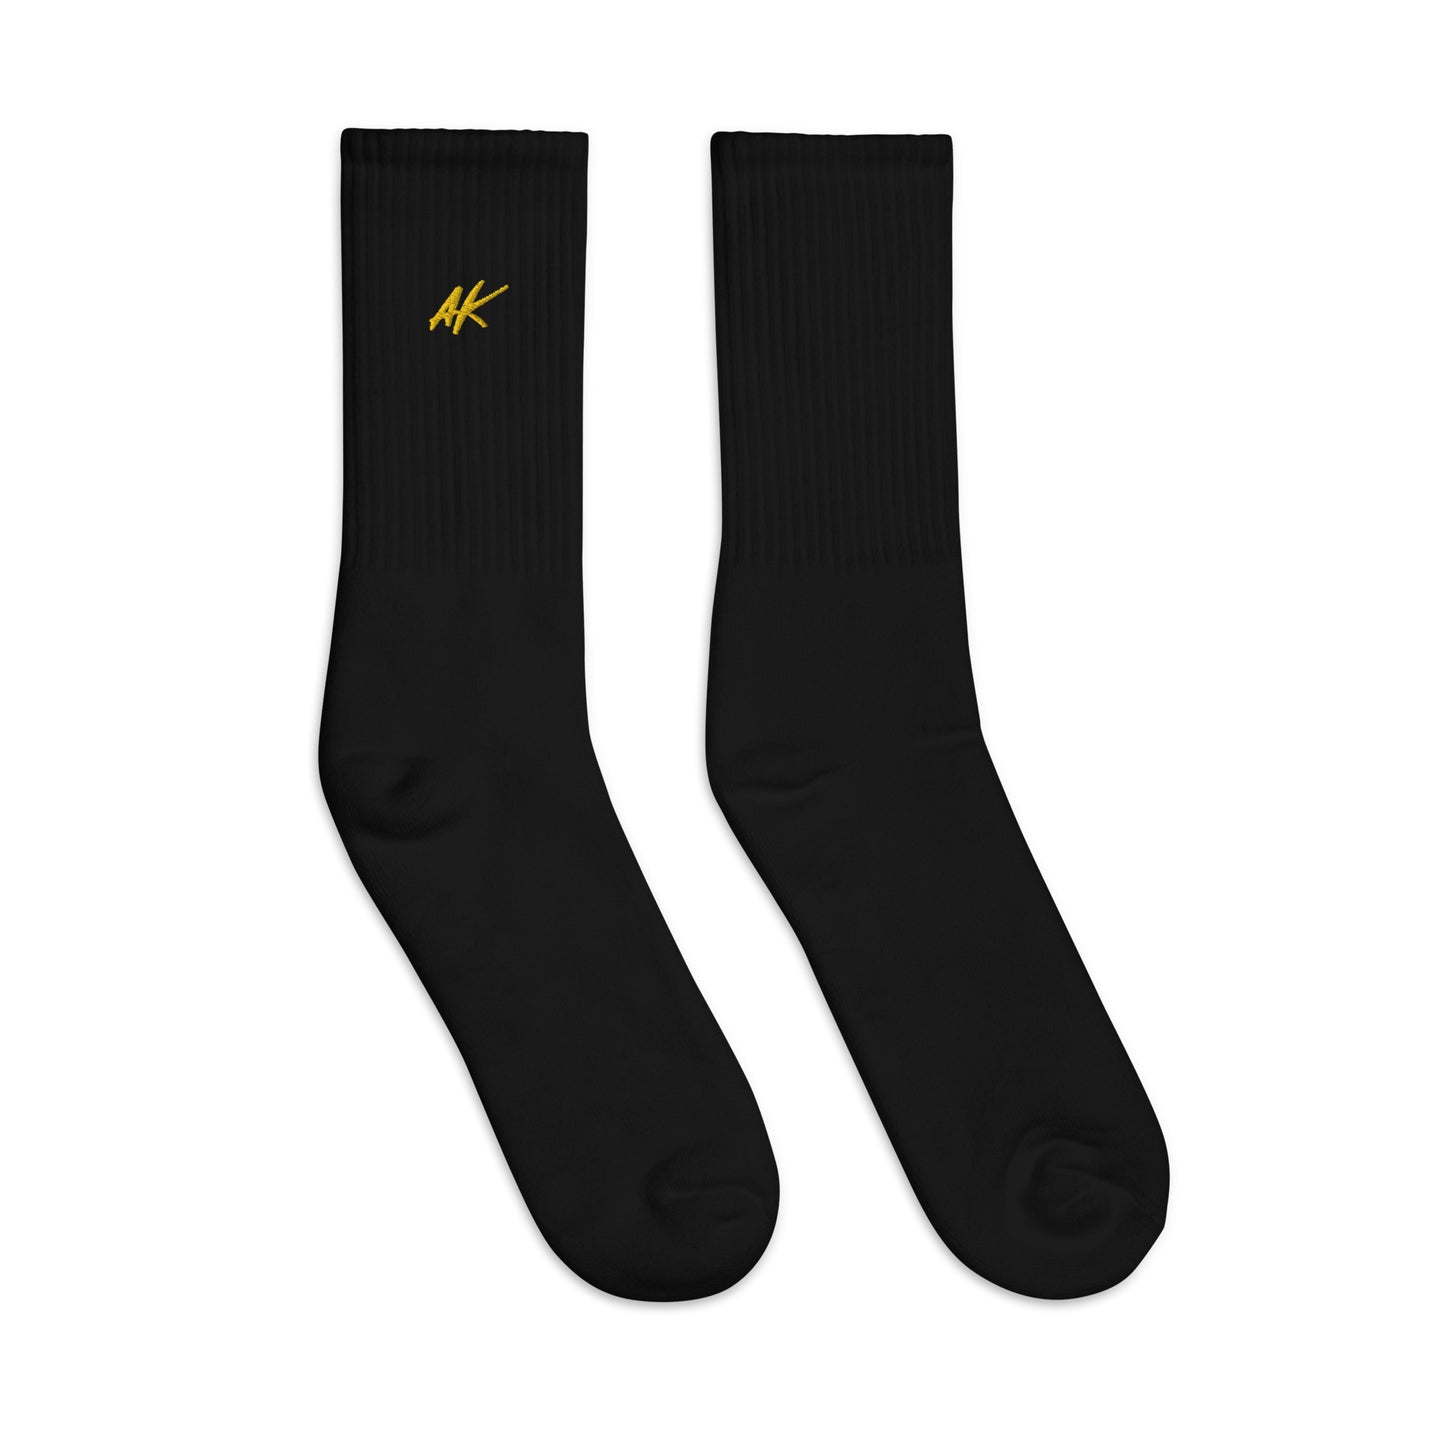 AK socks (gold)